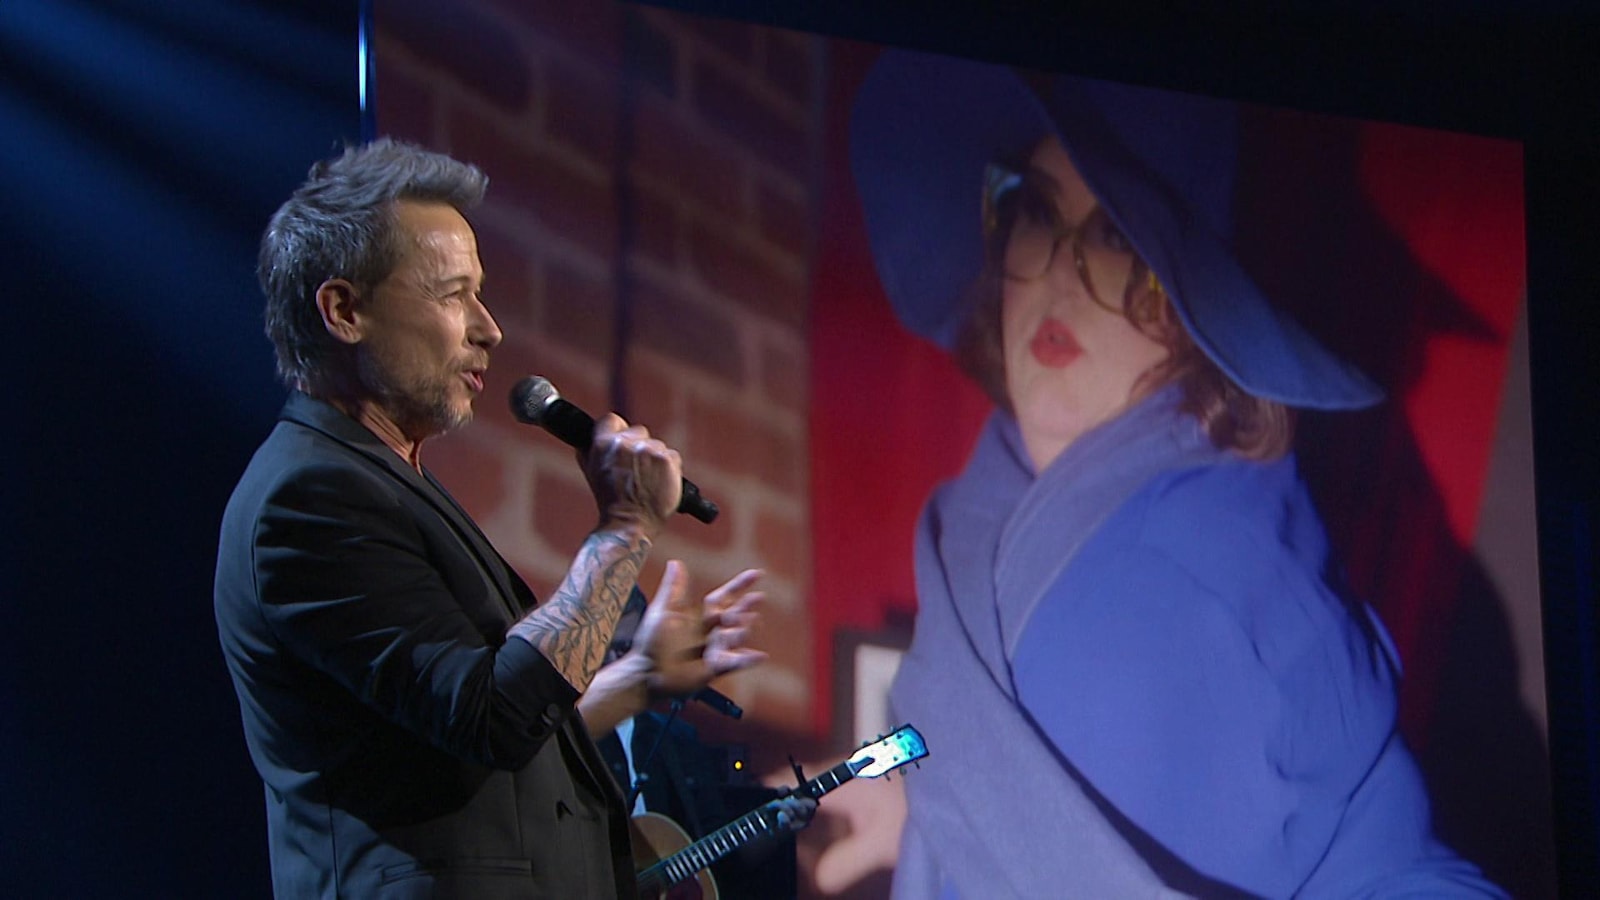 Stéphane Rousseau chante au micro, en arrière plan, Christine Morency est habillée en bleu.